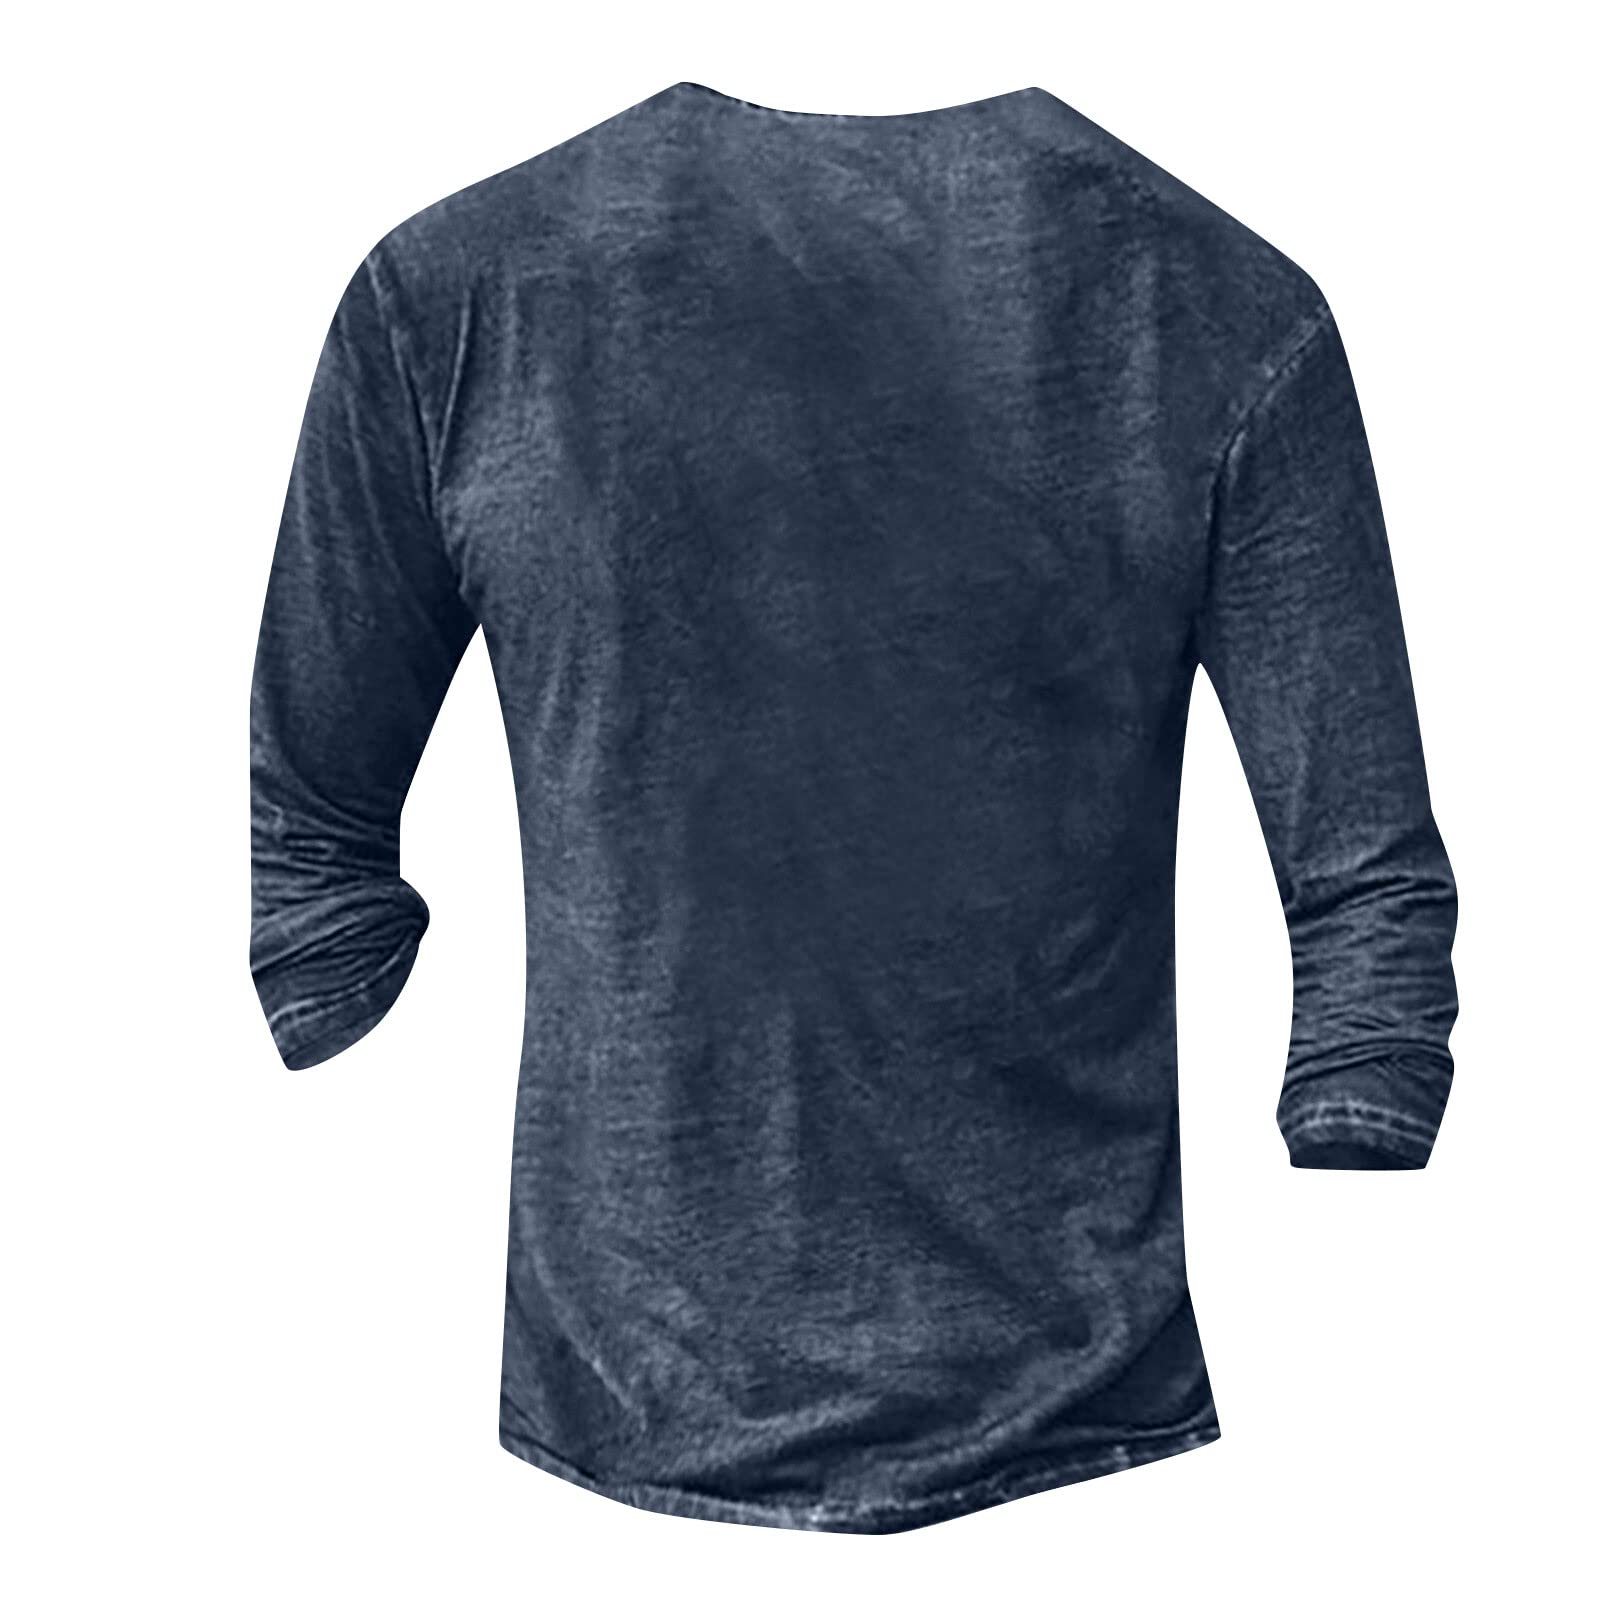 Fall Street Wear Casual Men'S Sportswear 2 Piece Jogging Suit Smiley Face  3d Printed Long Sleeve T-Shirt + Trousers Street Wear